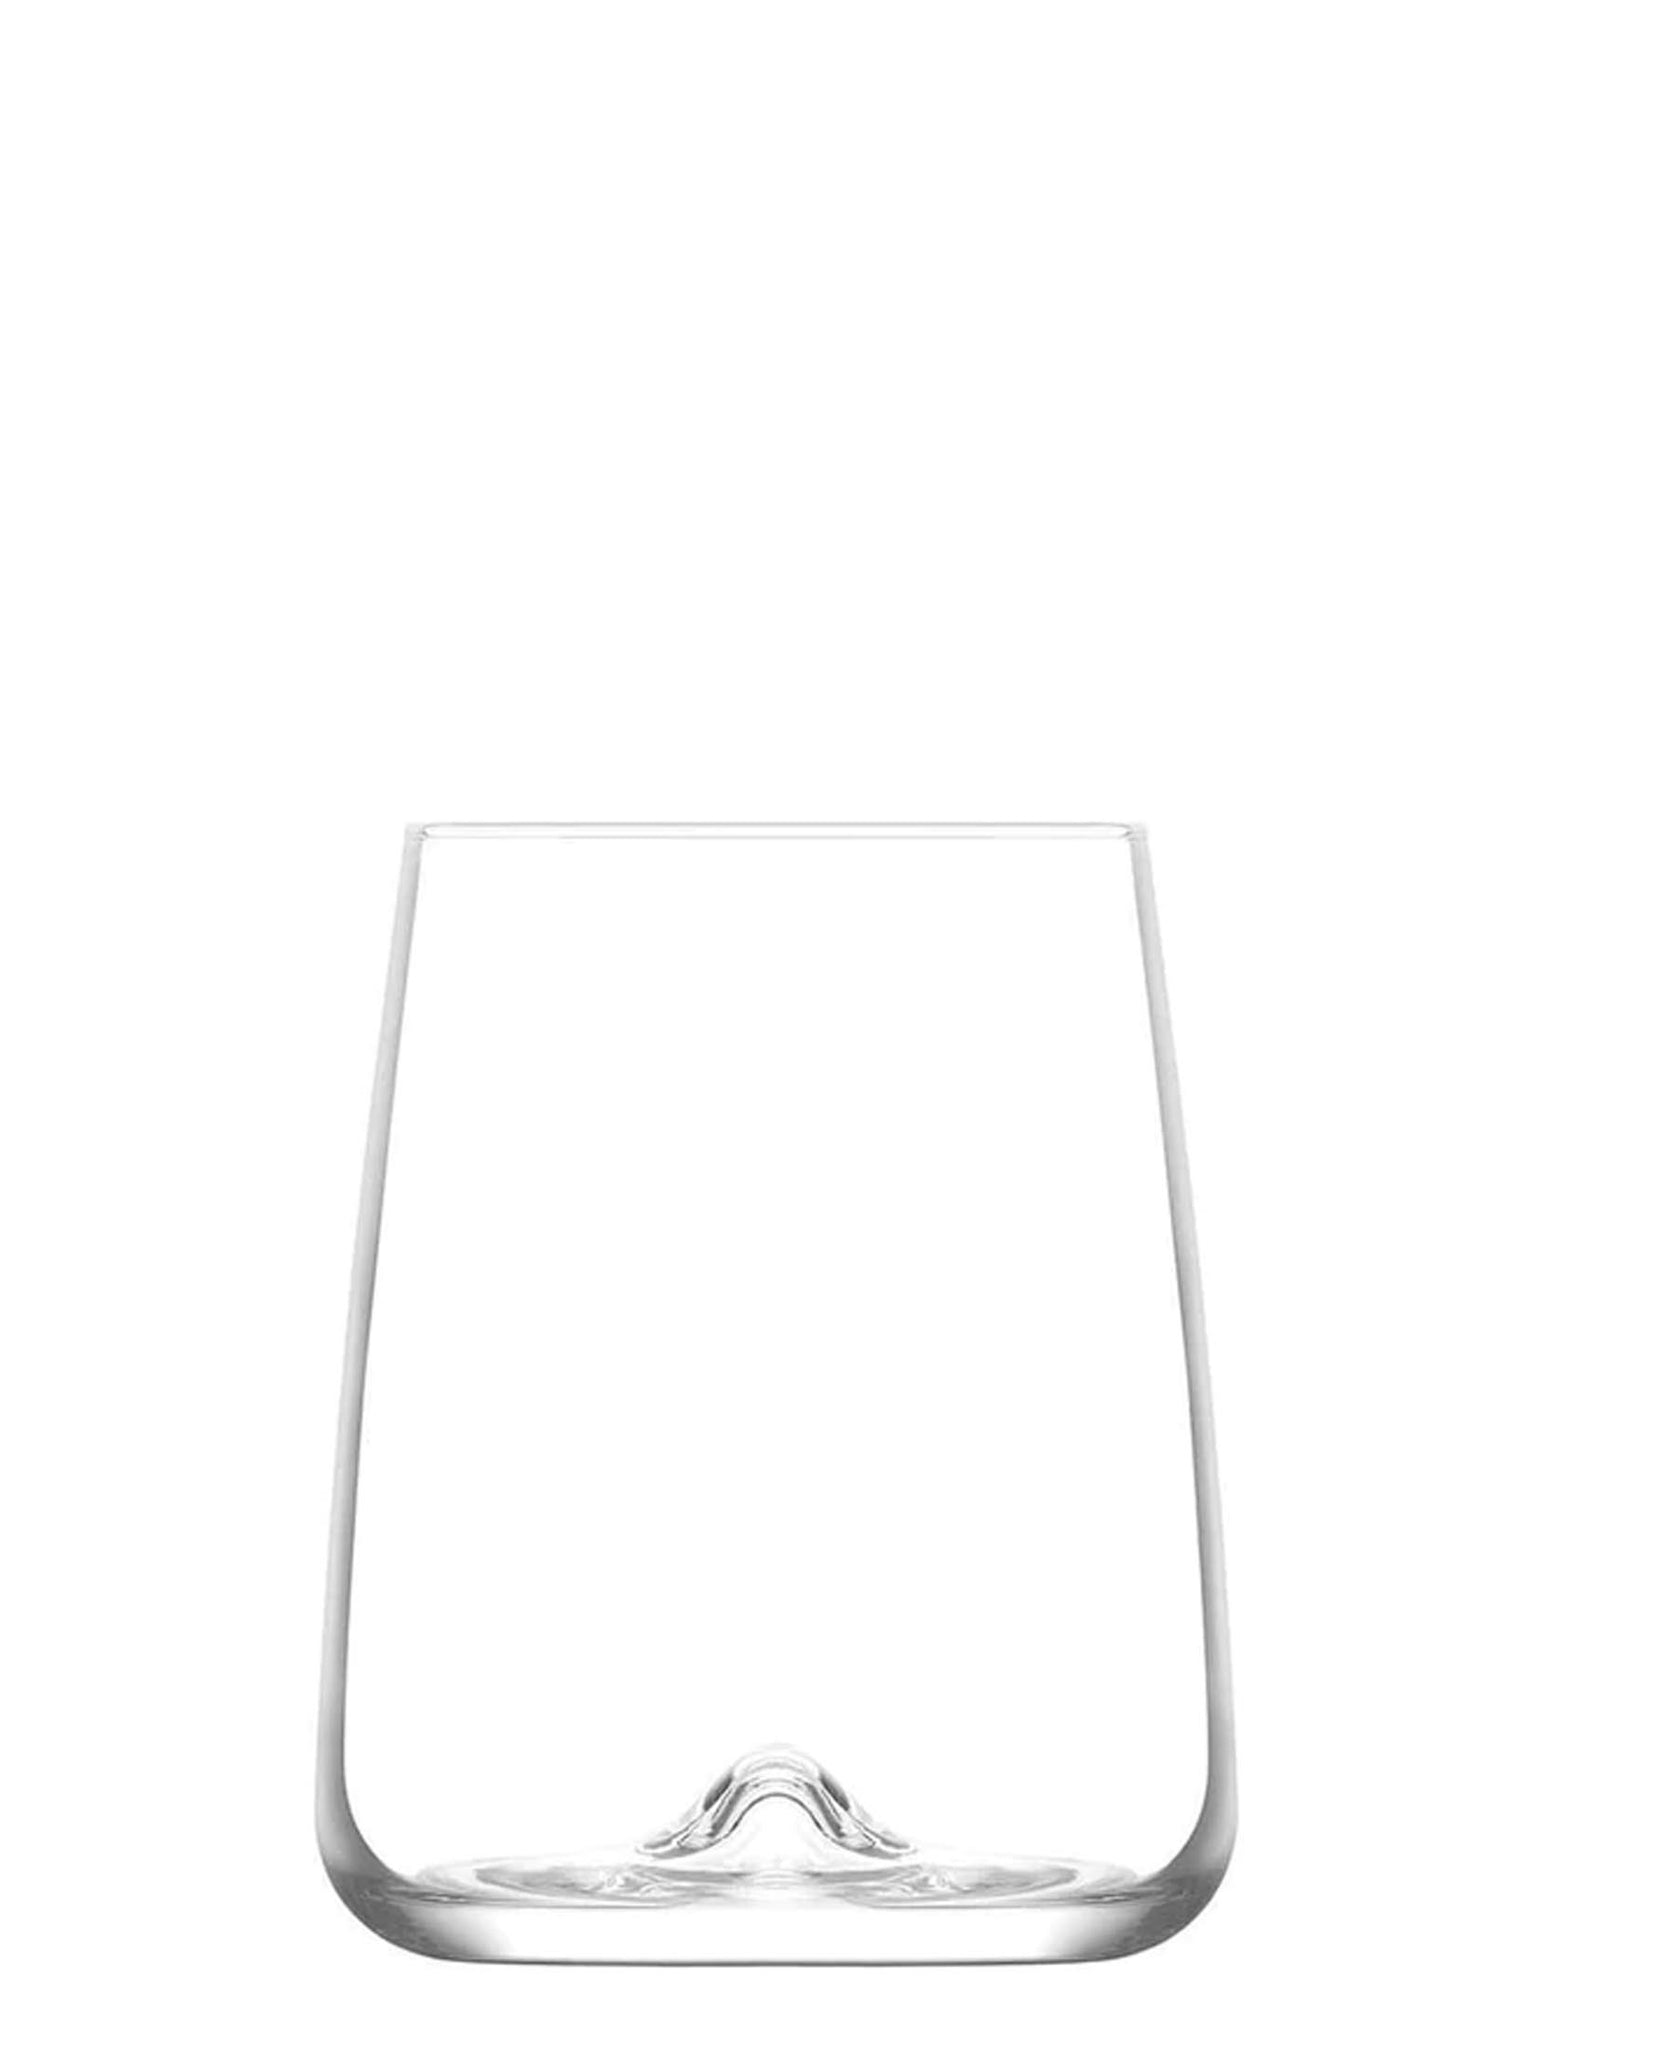 LAV Terra Whiskey Glass Set 475ml Set of 6 - Clear